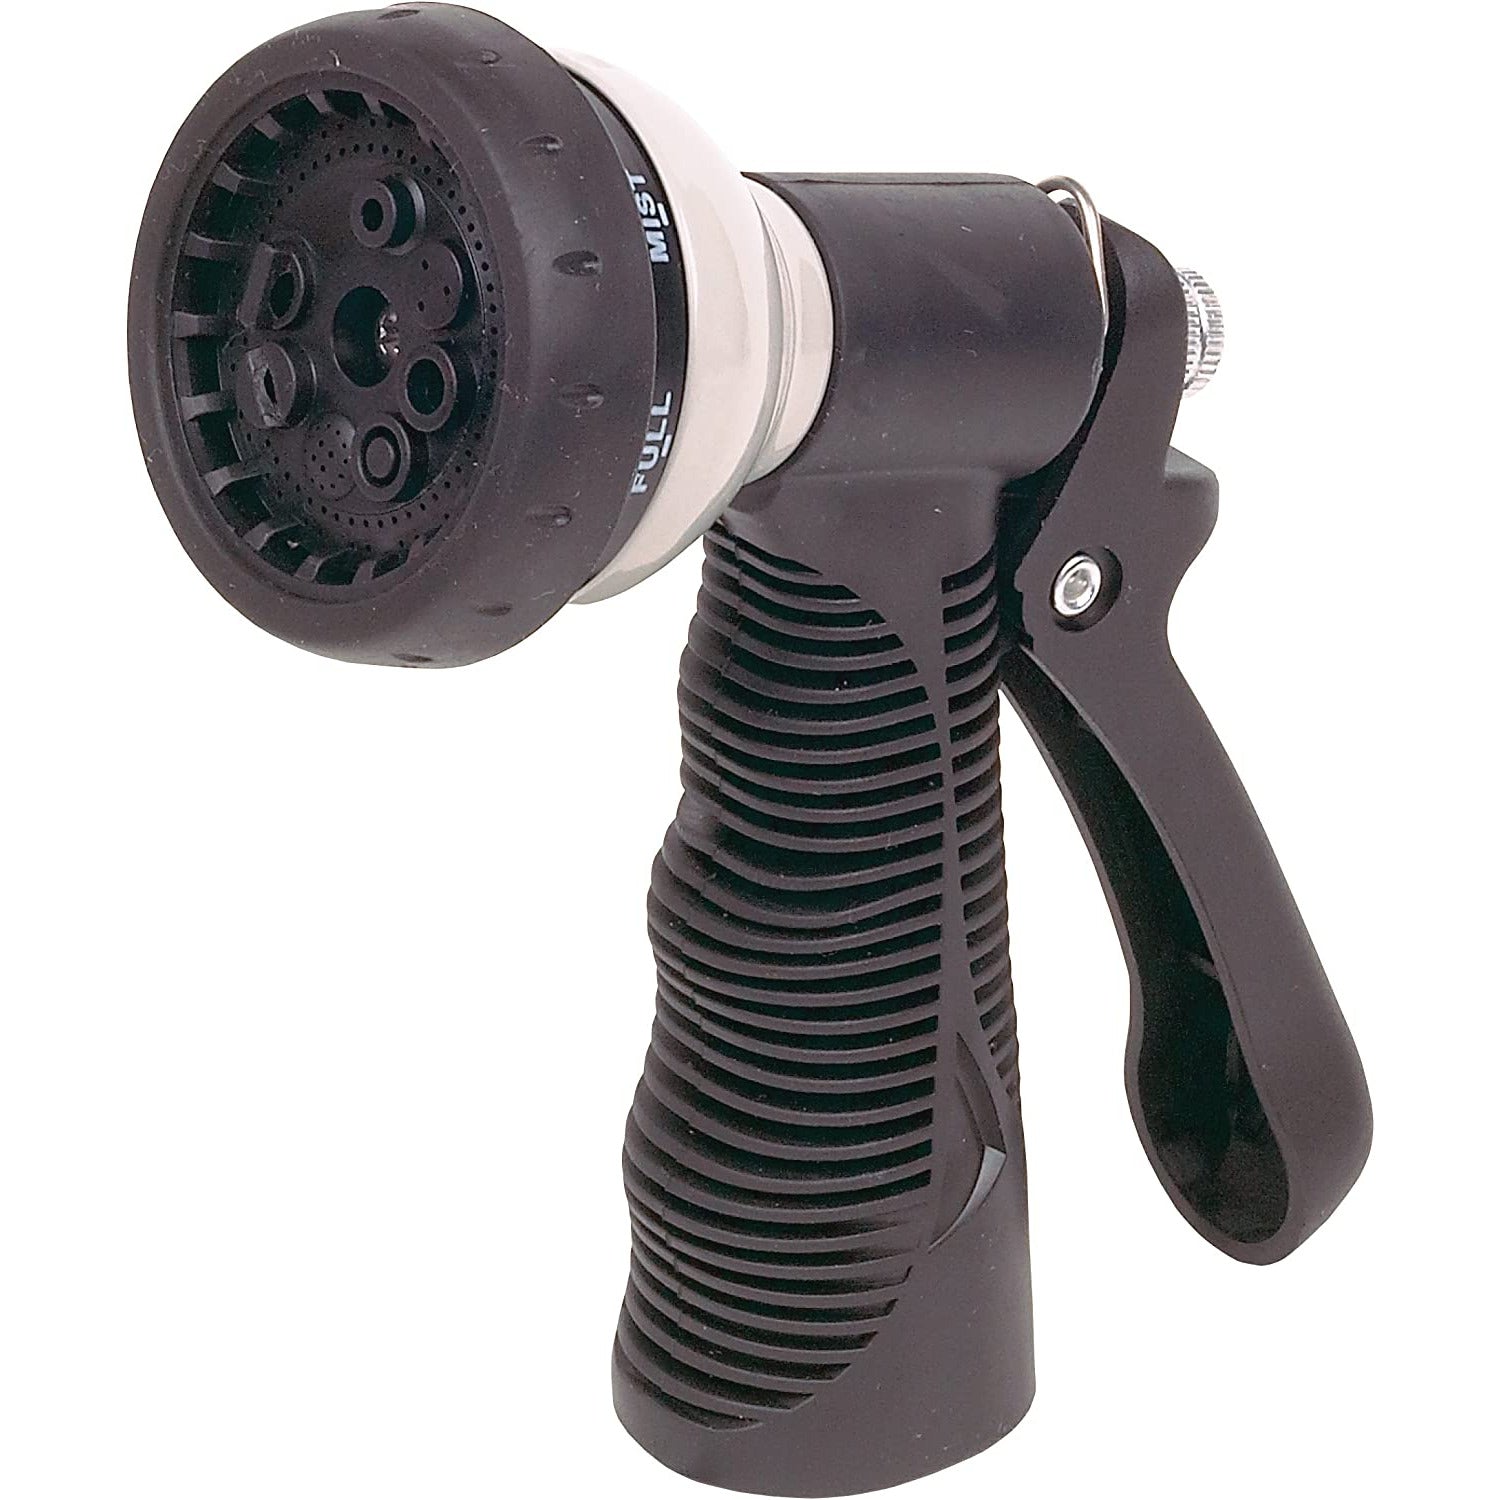 CND 90042 Carrand 8-Way Adjustable Spray Nozzle